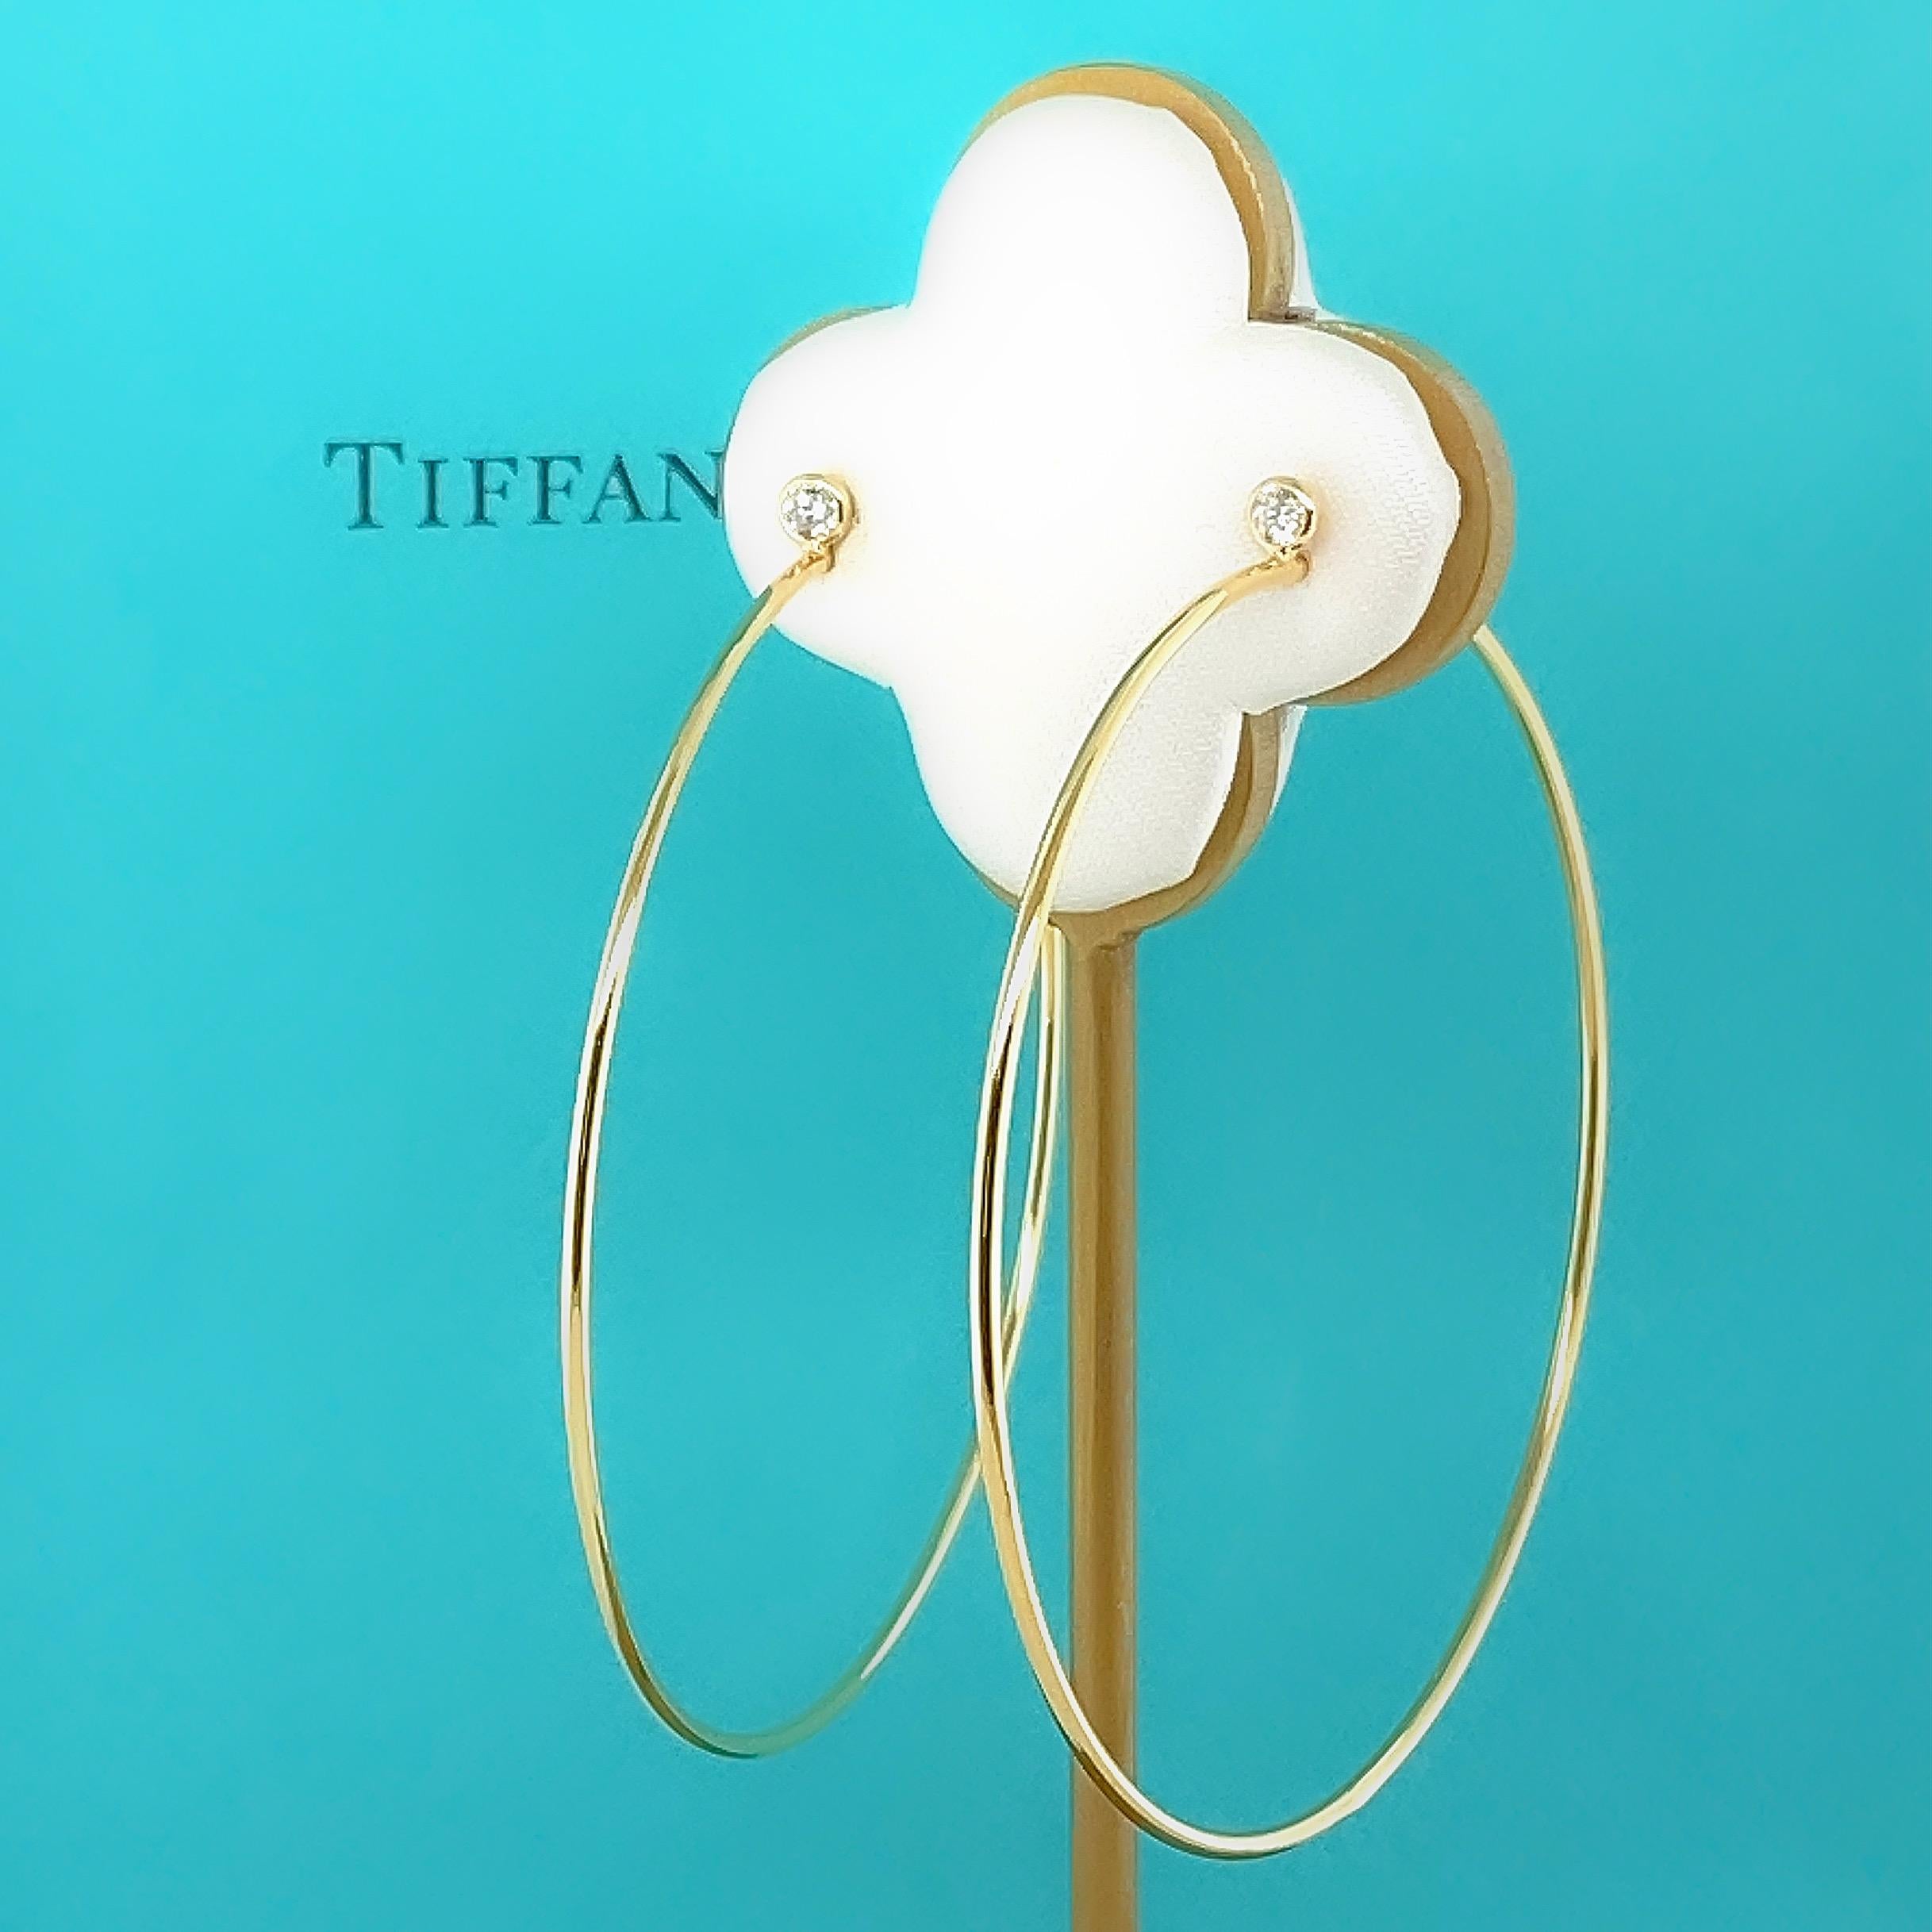 Tiffany & Co. Elsa Peretti Diamond Hoop Earrings in 18kt Yellow Gold Size Large 1